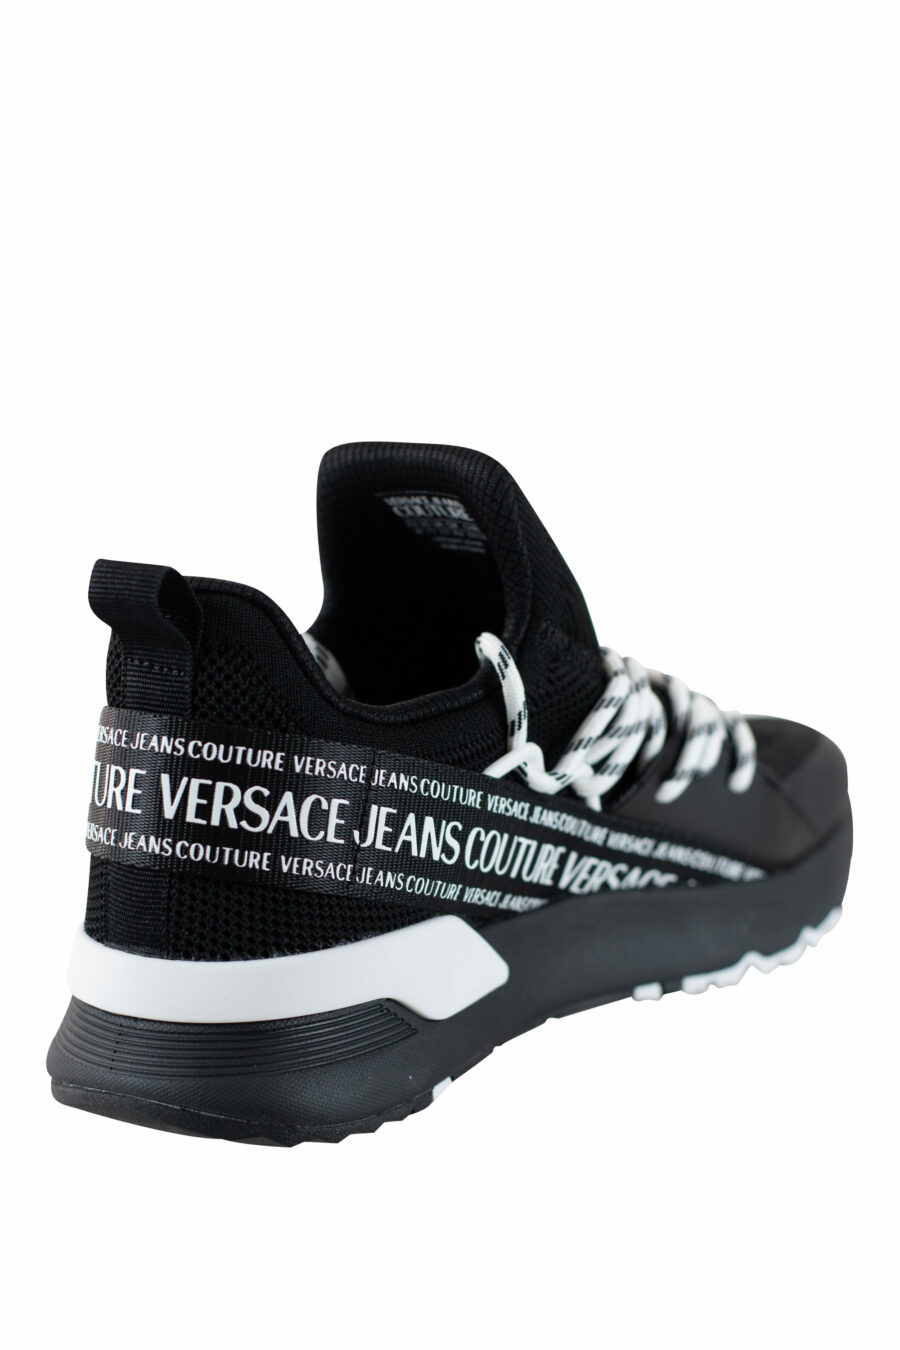 Zapatillas negras "dynamic" estilo calcetin con logo en cinta - IMG 4520